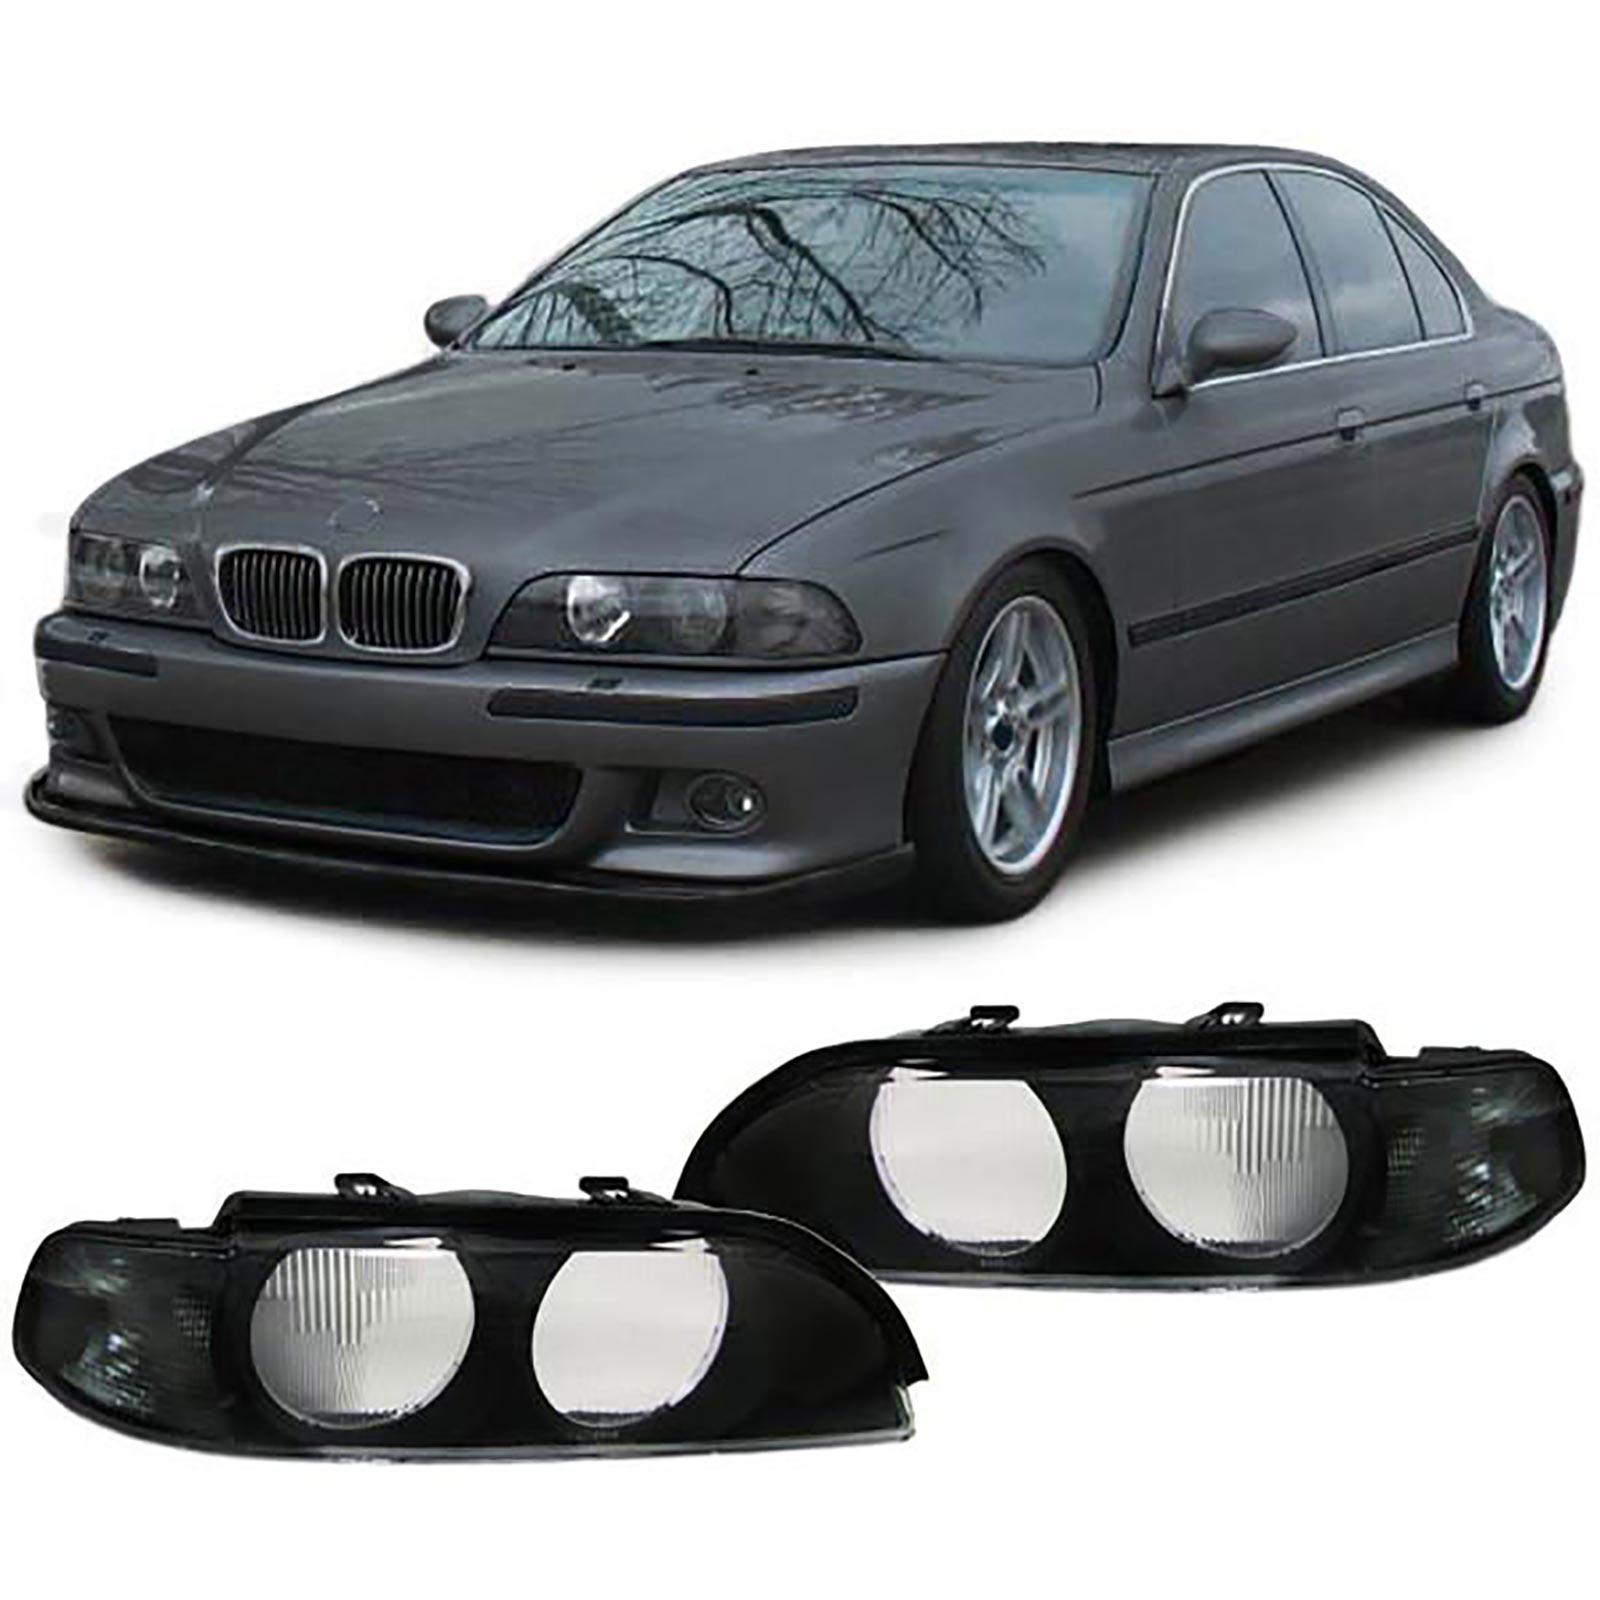 Streuscheiben Scheinwerfergläser Blinker schwarz passend für BMW 5er E39  95-00